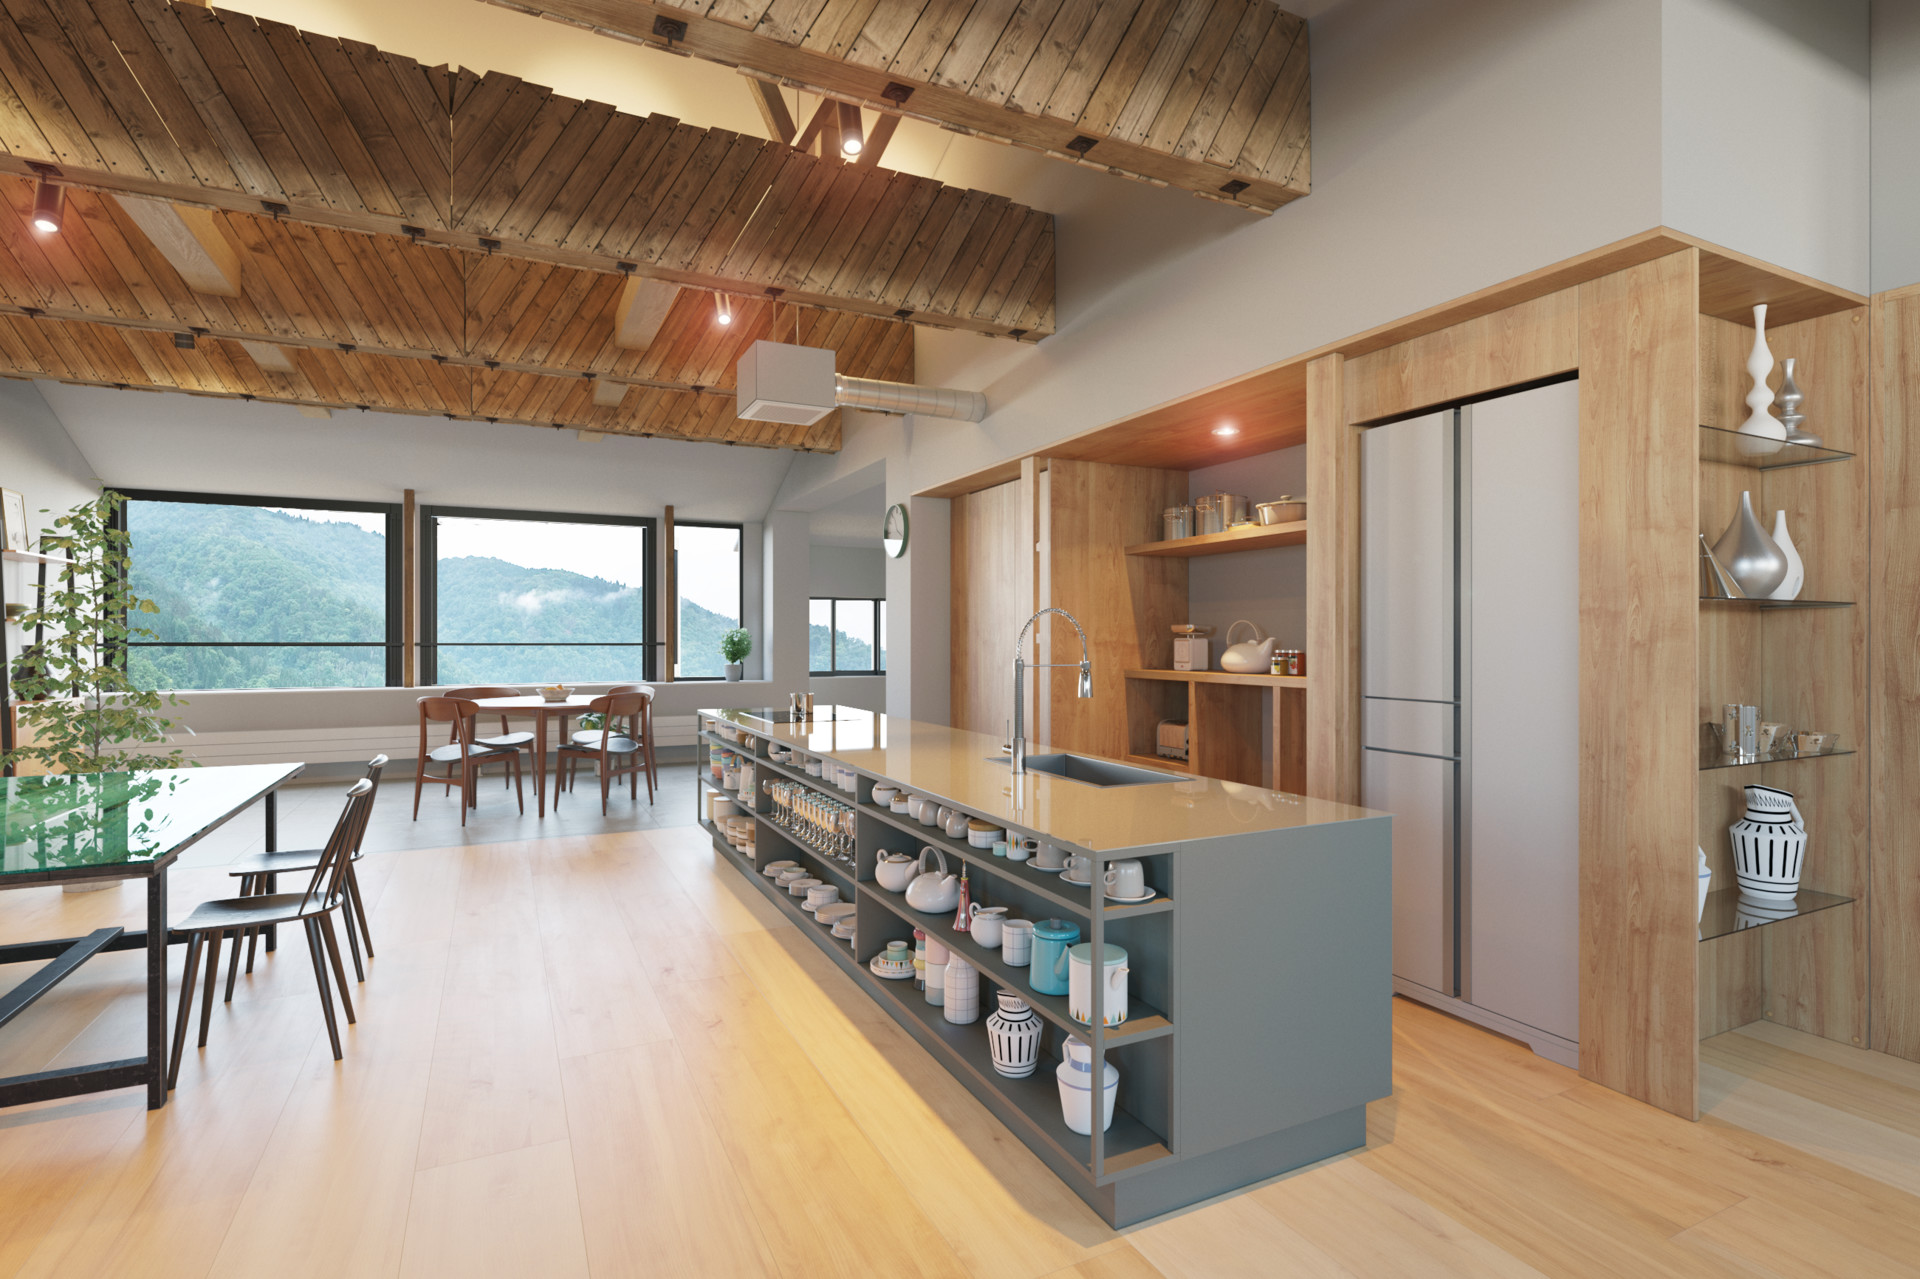 japanese interior design kitchen